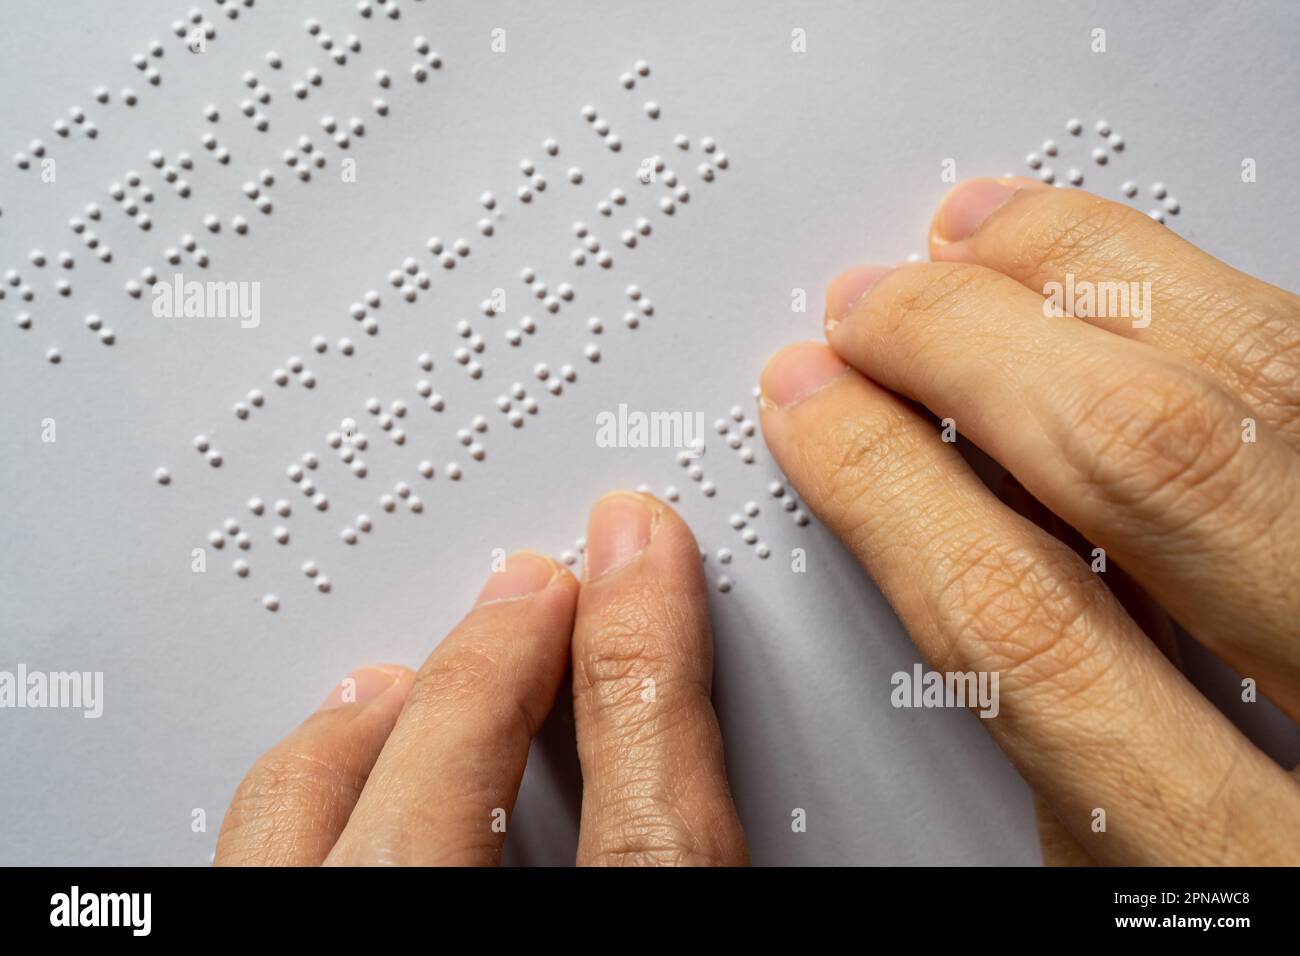 Non vedenti che leggono il libro. Le lettere Braille in un paragrafo sono Dalla A alla Z e dalla 1 alla 0 in ordine alfabetico. Foto Stock